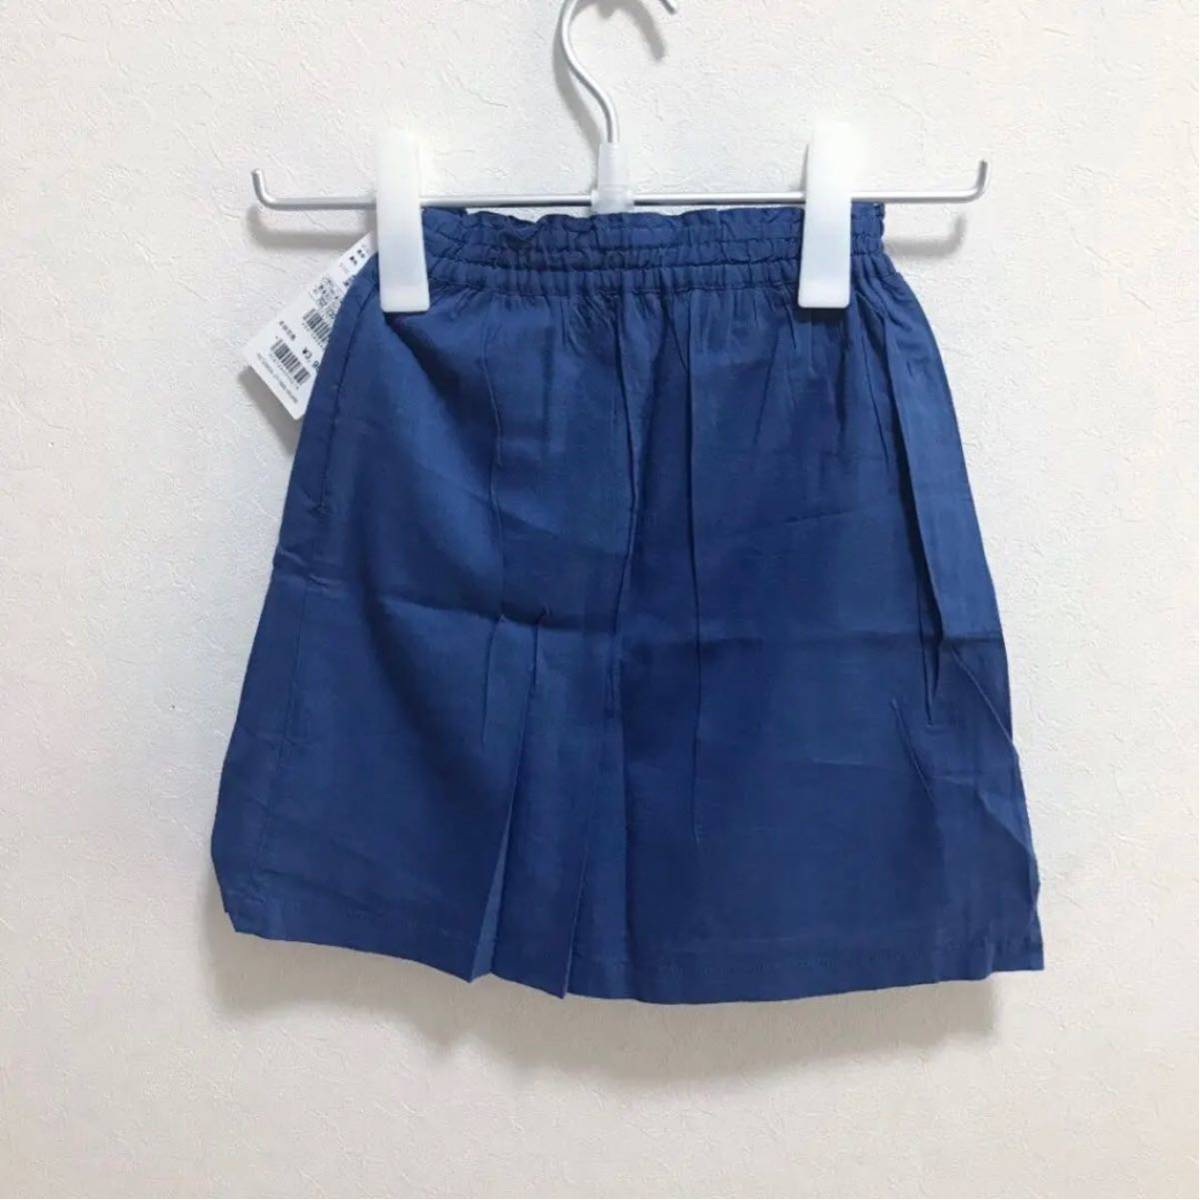 p7 новый товар [ arnold pelmer Arnold Palmer ] Logo вышивка . симпатичный Kids для девочки юбка * 90cm 95cm 100cm голубой весна летний 